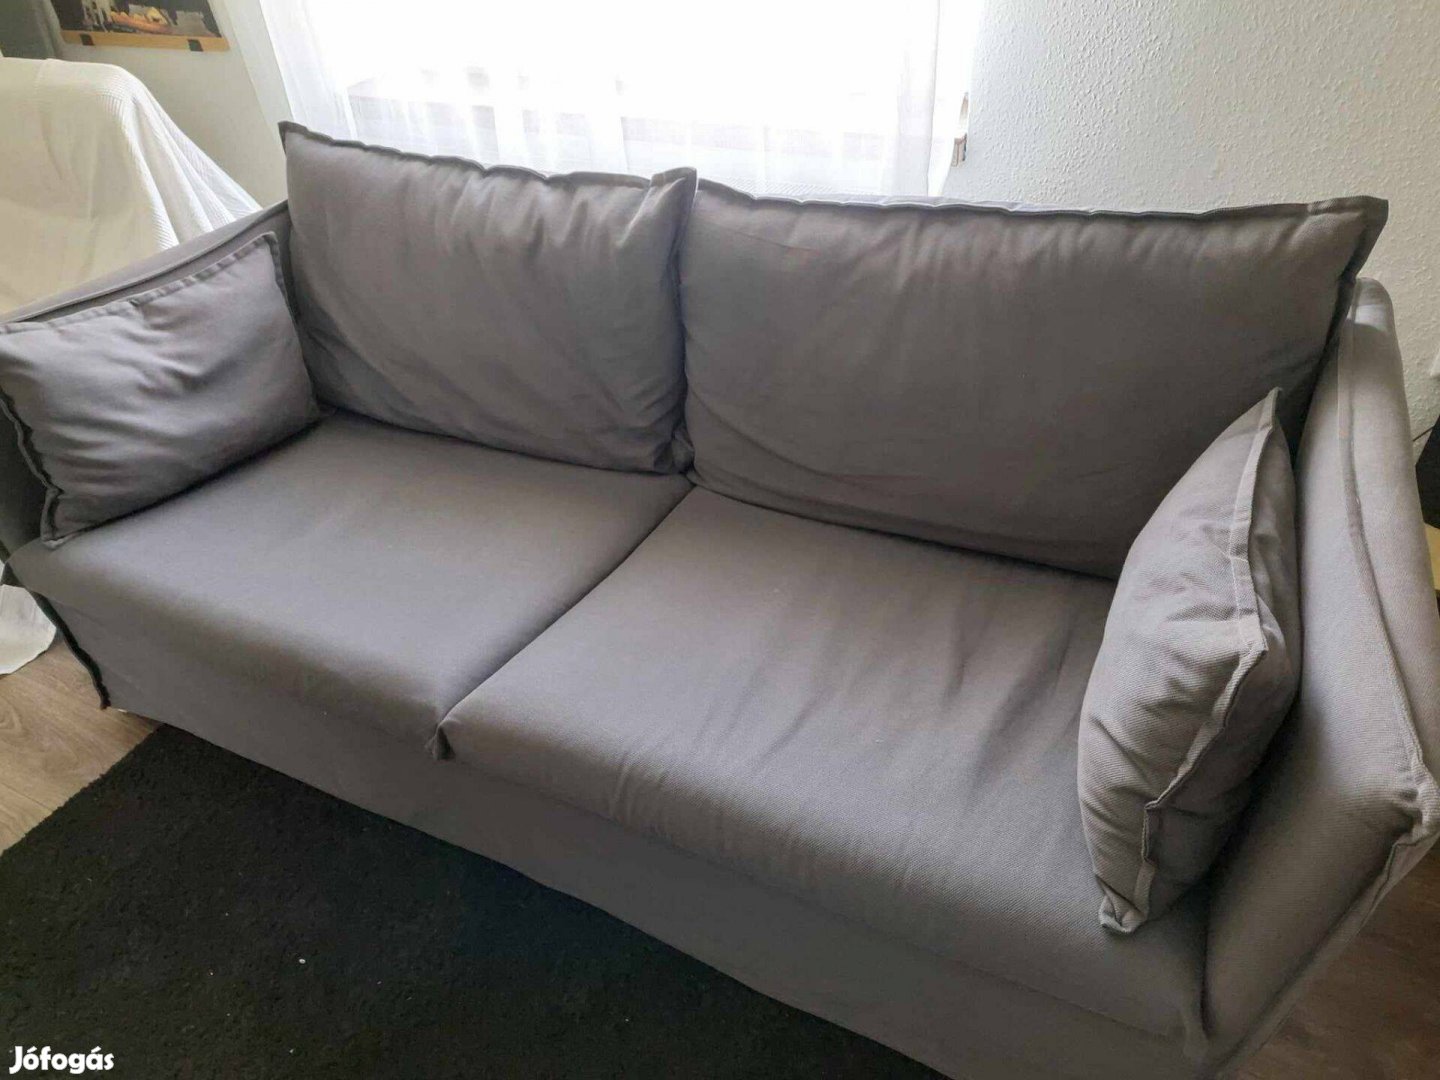 IKEA Backsalen 3 személyes kanapé 1 éve újonnan vásárolt! Hallarp szür